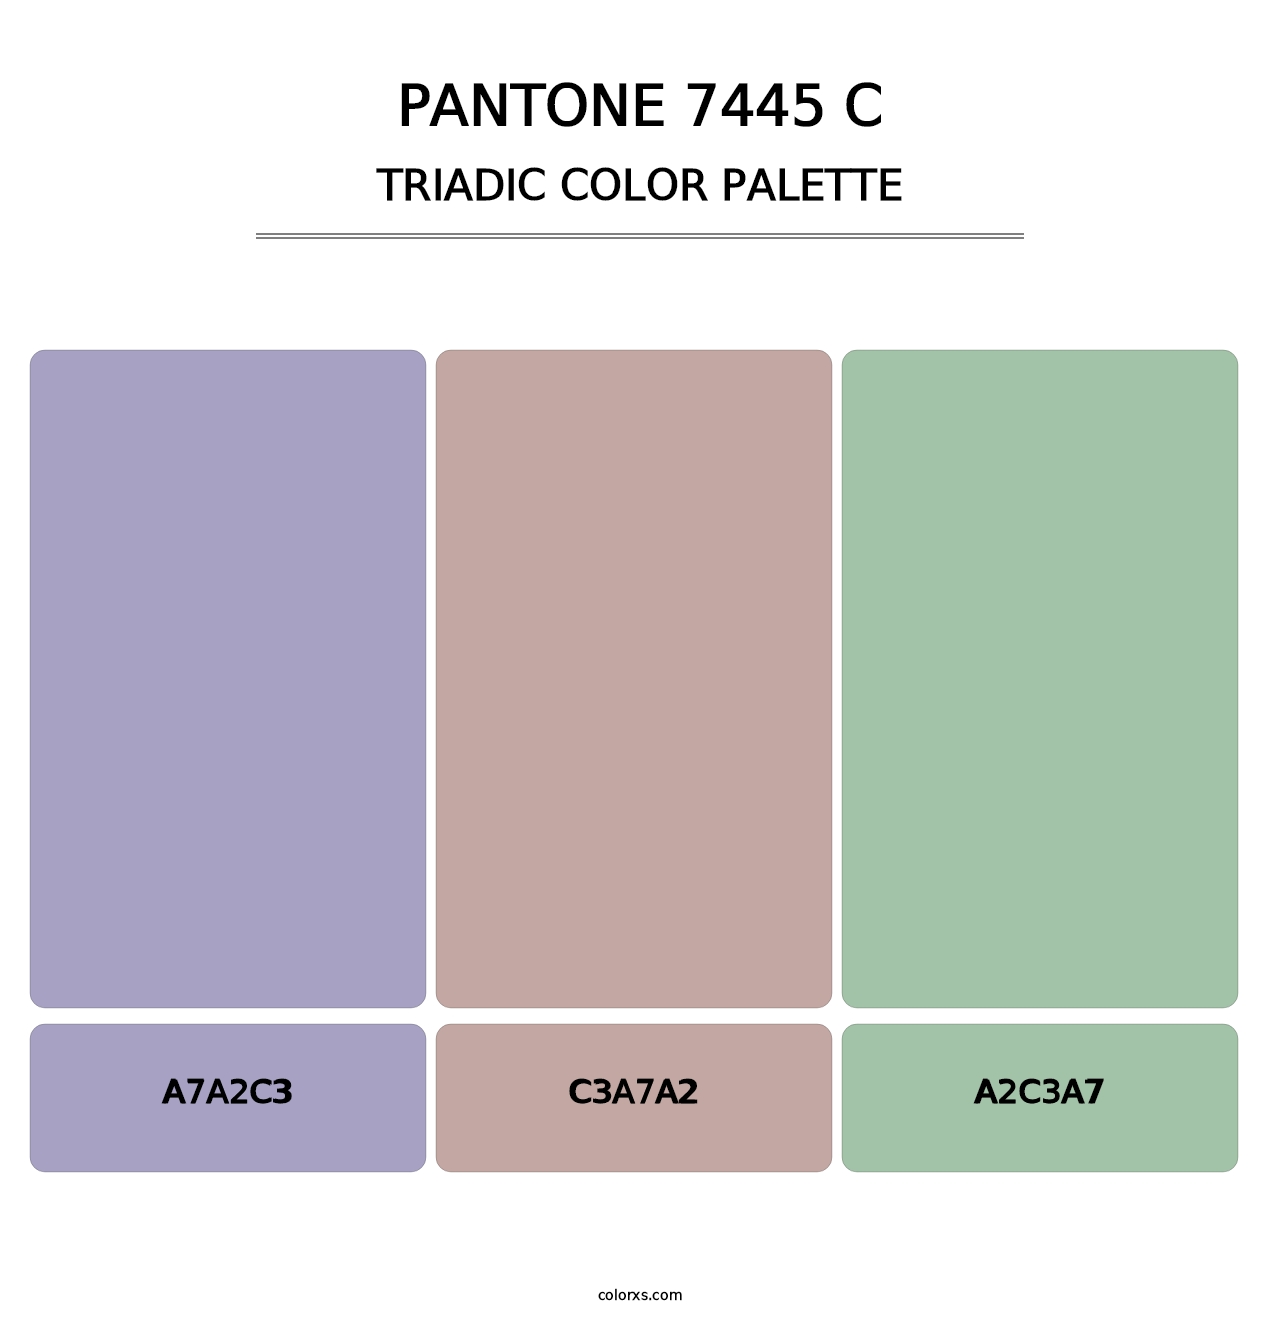 PANTONE 7445 C - Triadic Color Palette